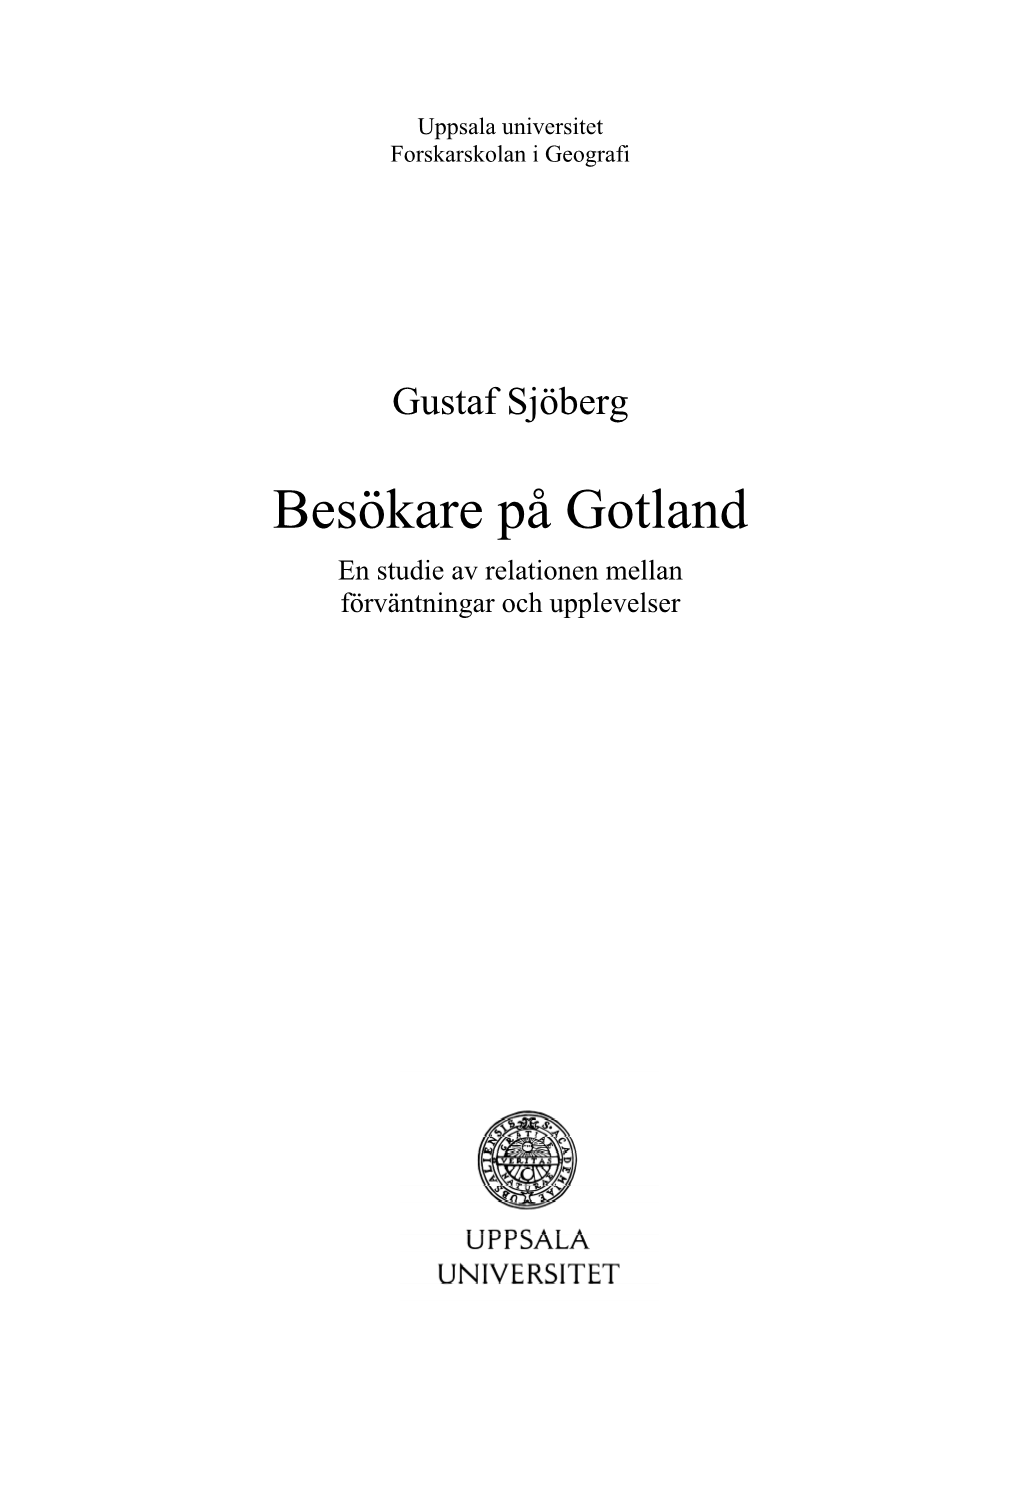 Besökare På Gotland En Studie Av Relationen Mellan Förväntningar Och Upplevelser